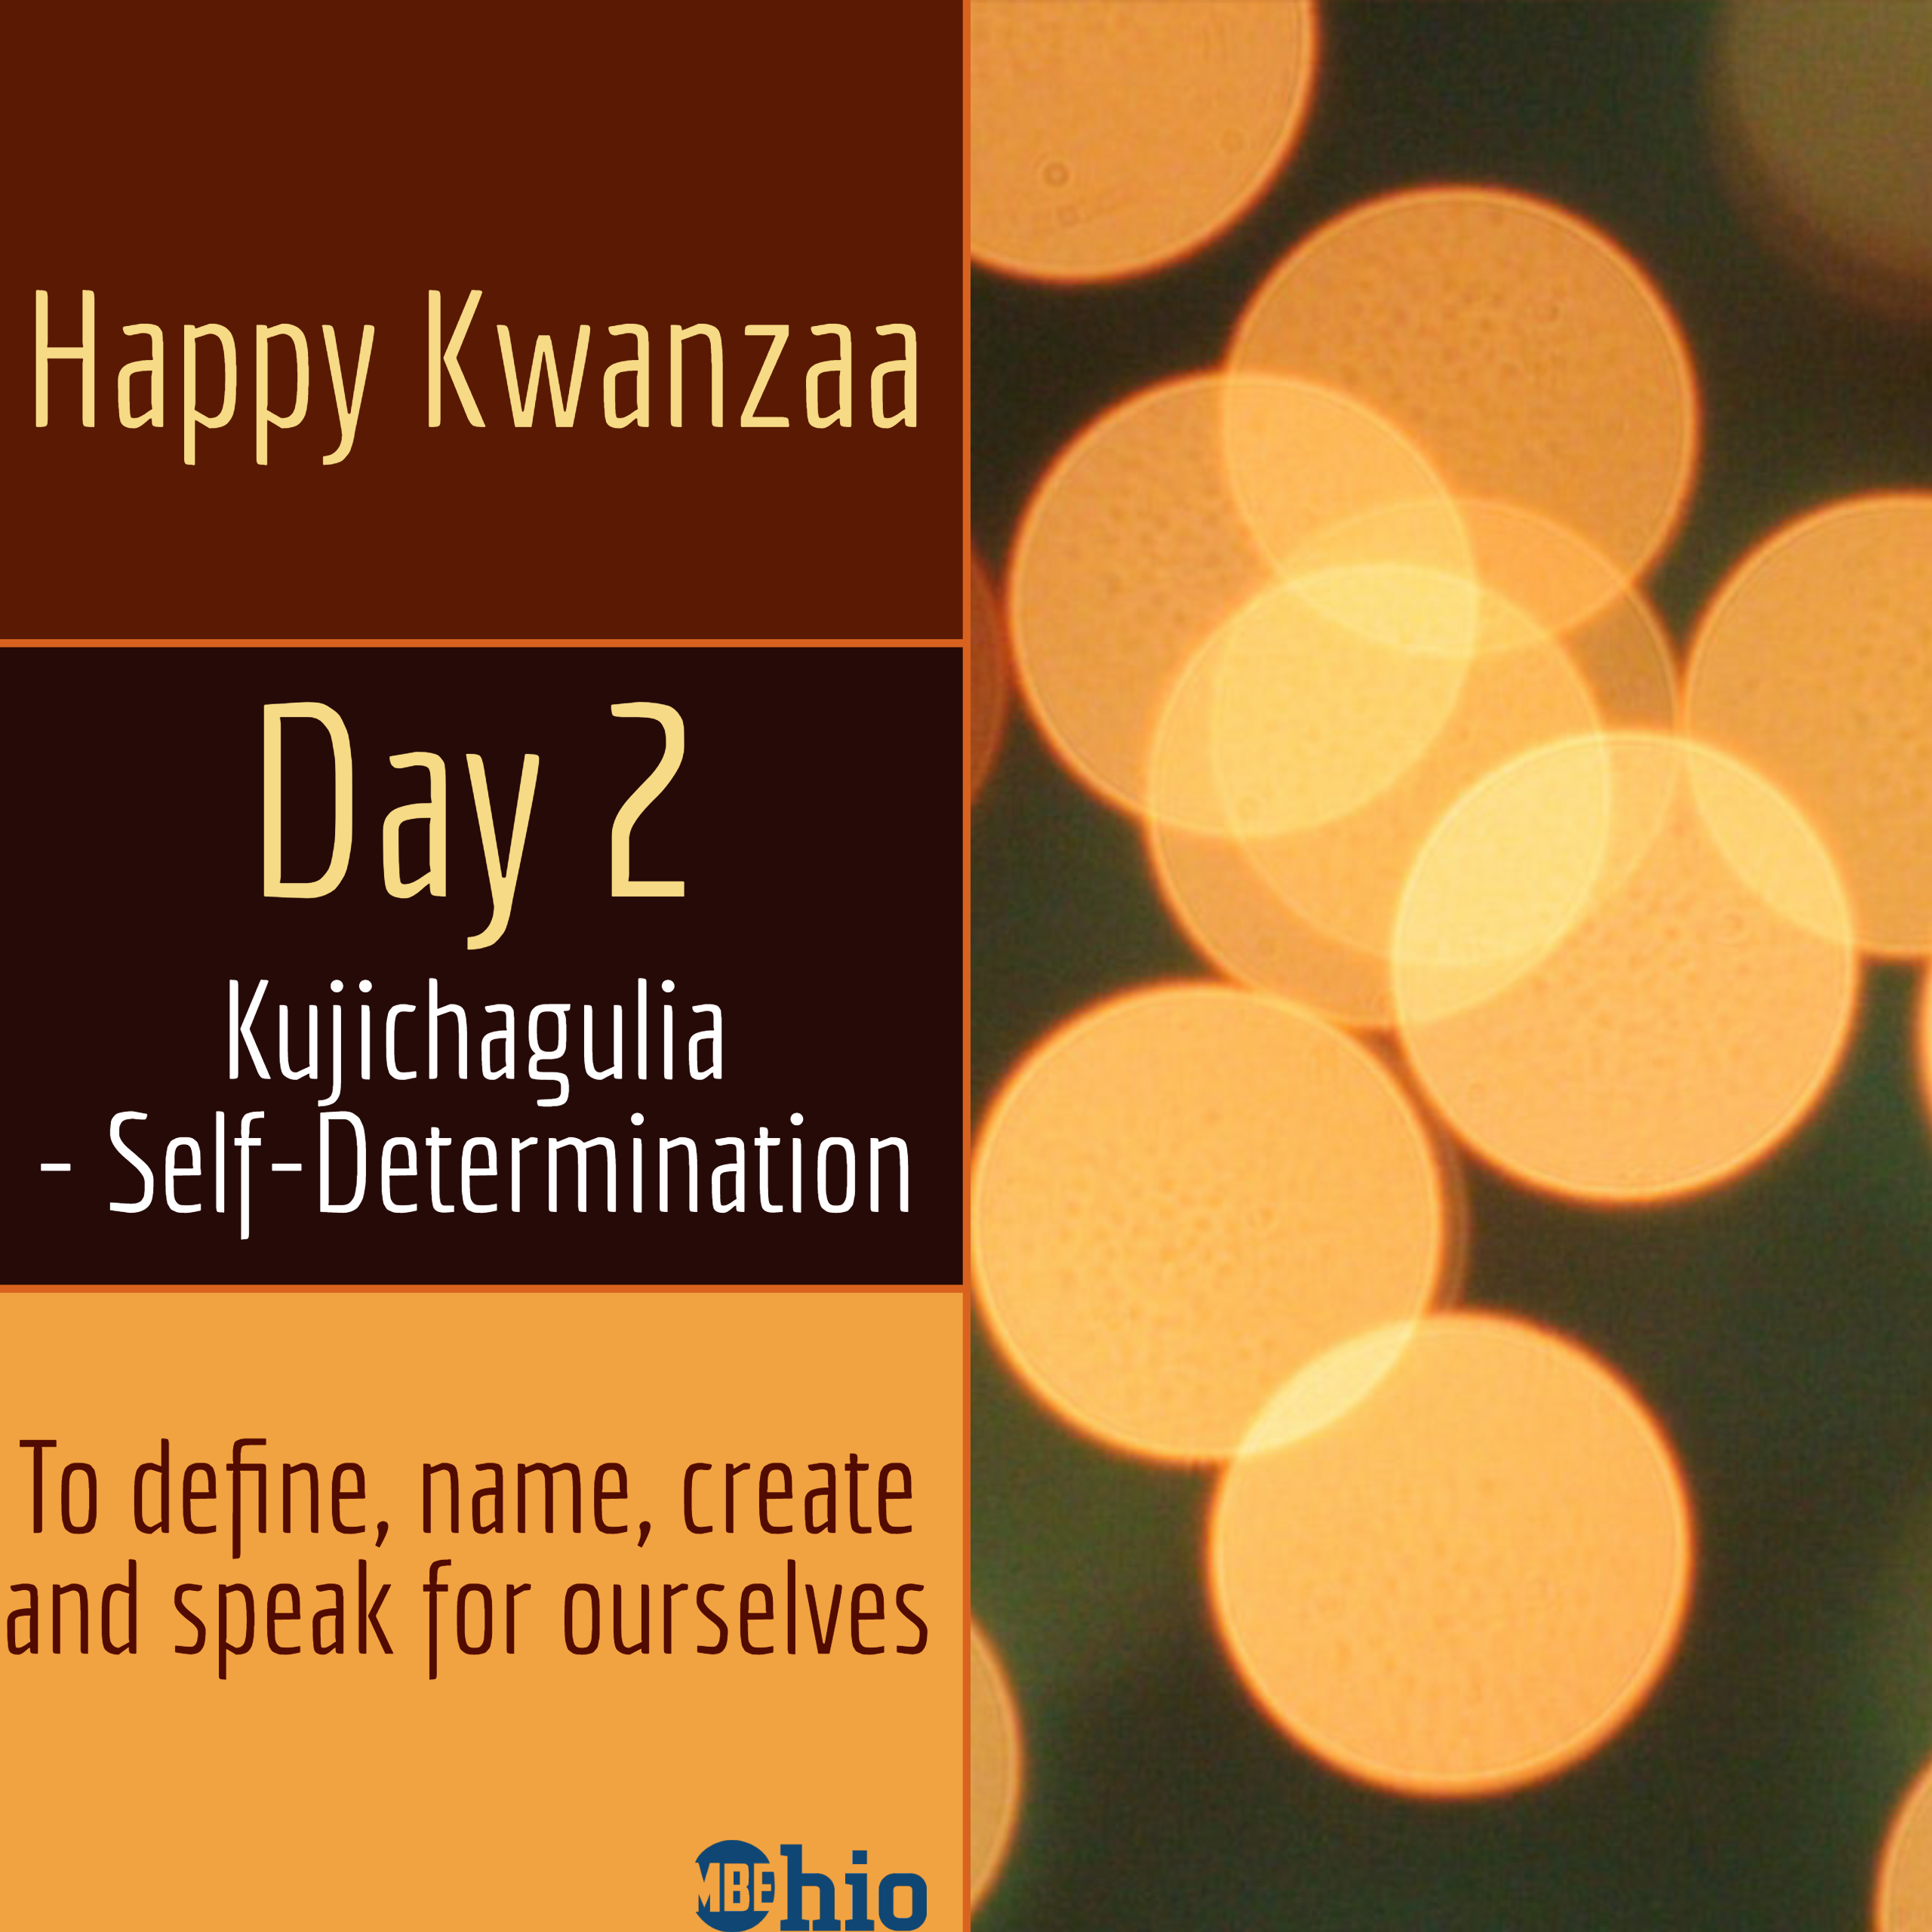 Happy Kwanzaa Day 2 Kujichagulia = Self Determination OhioMBE